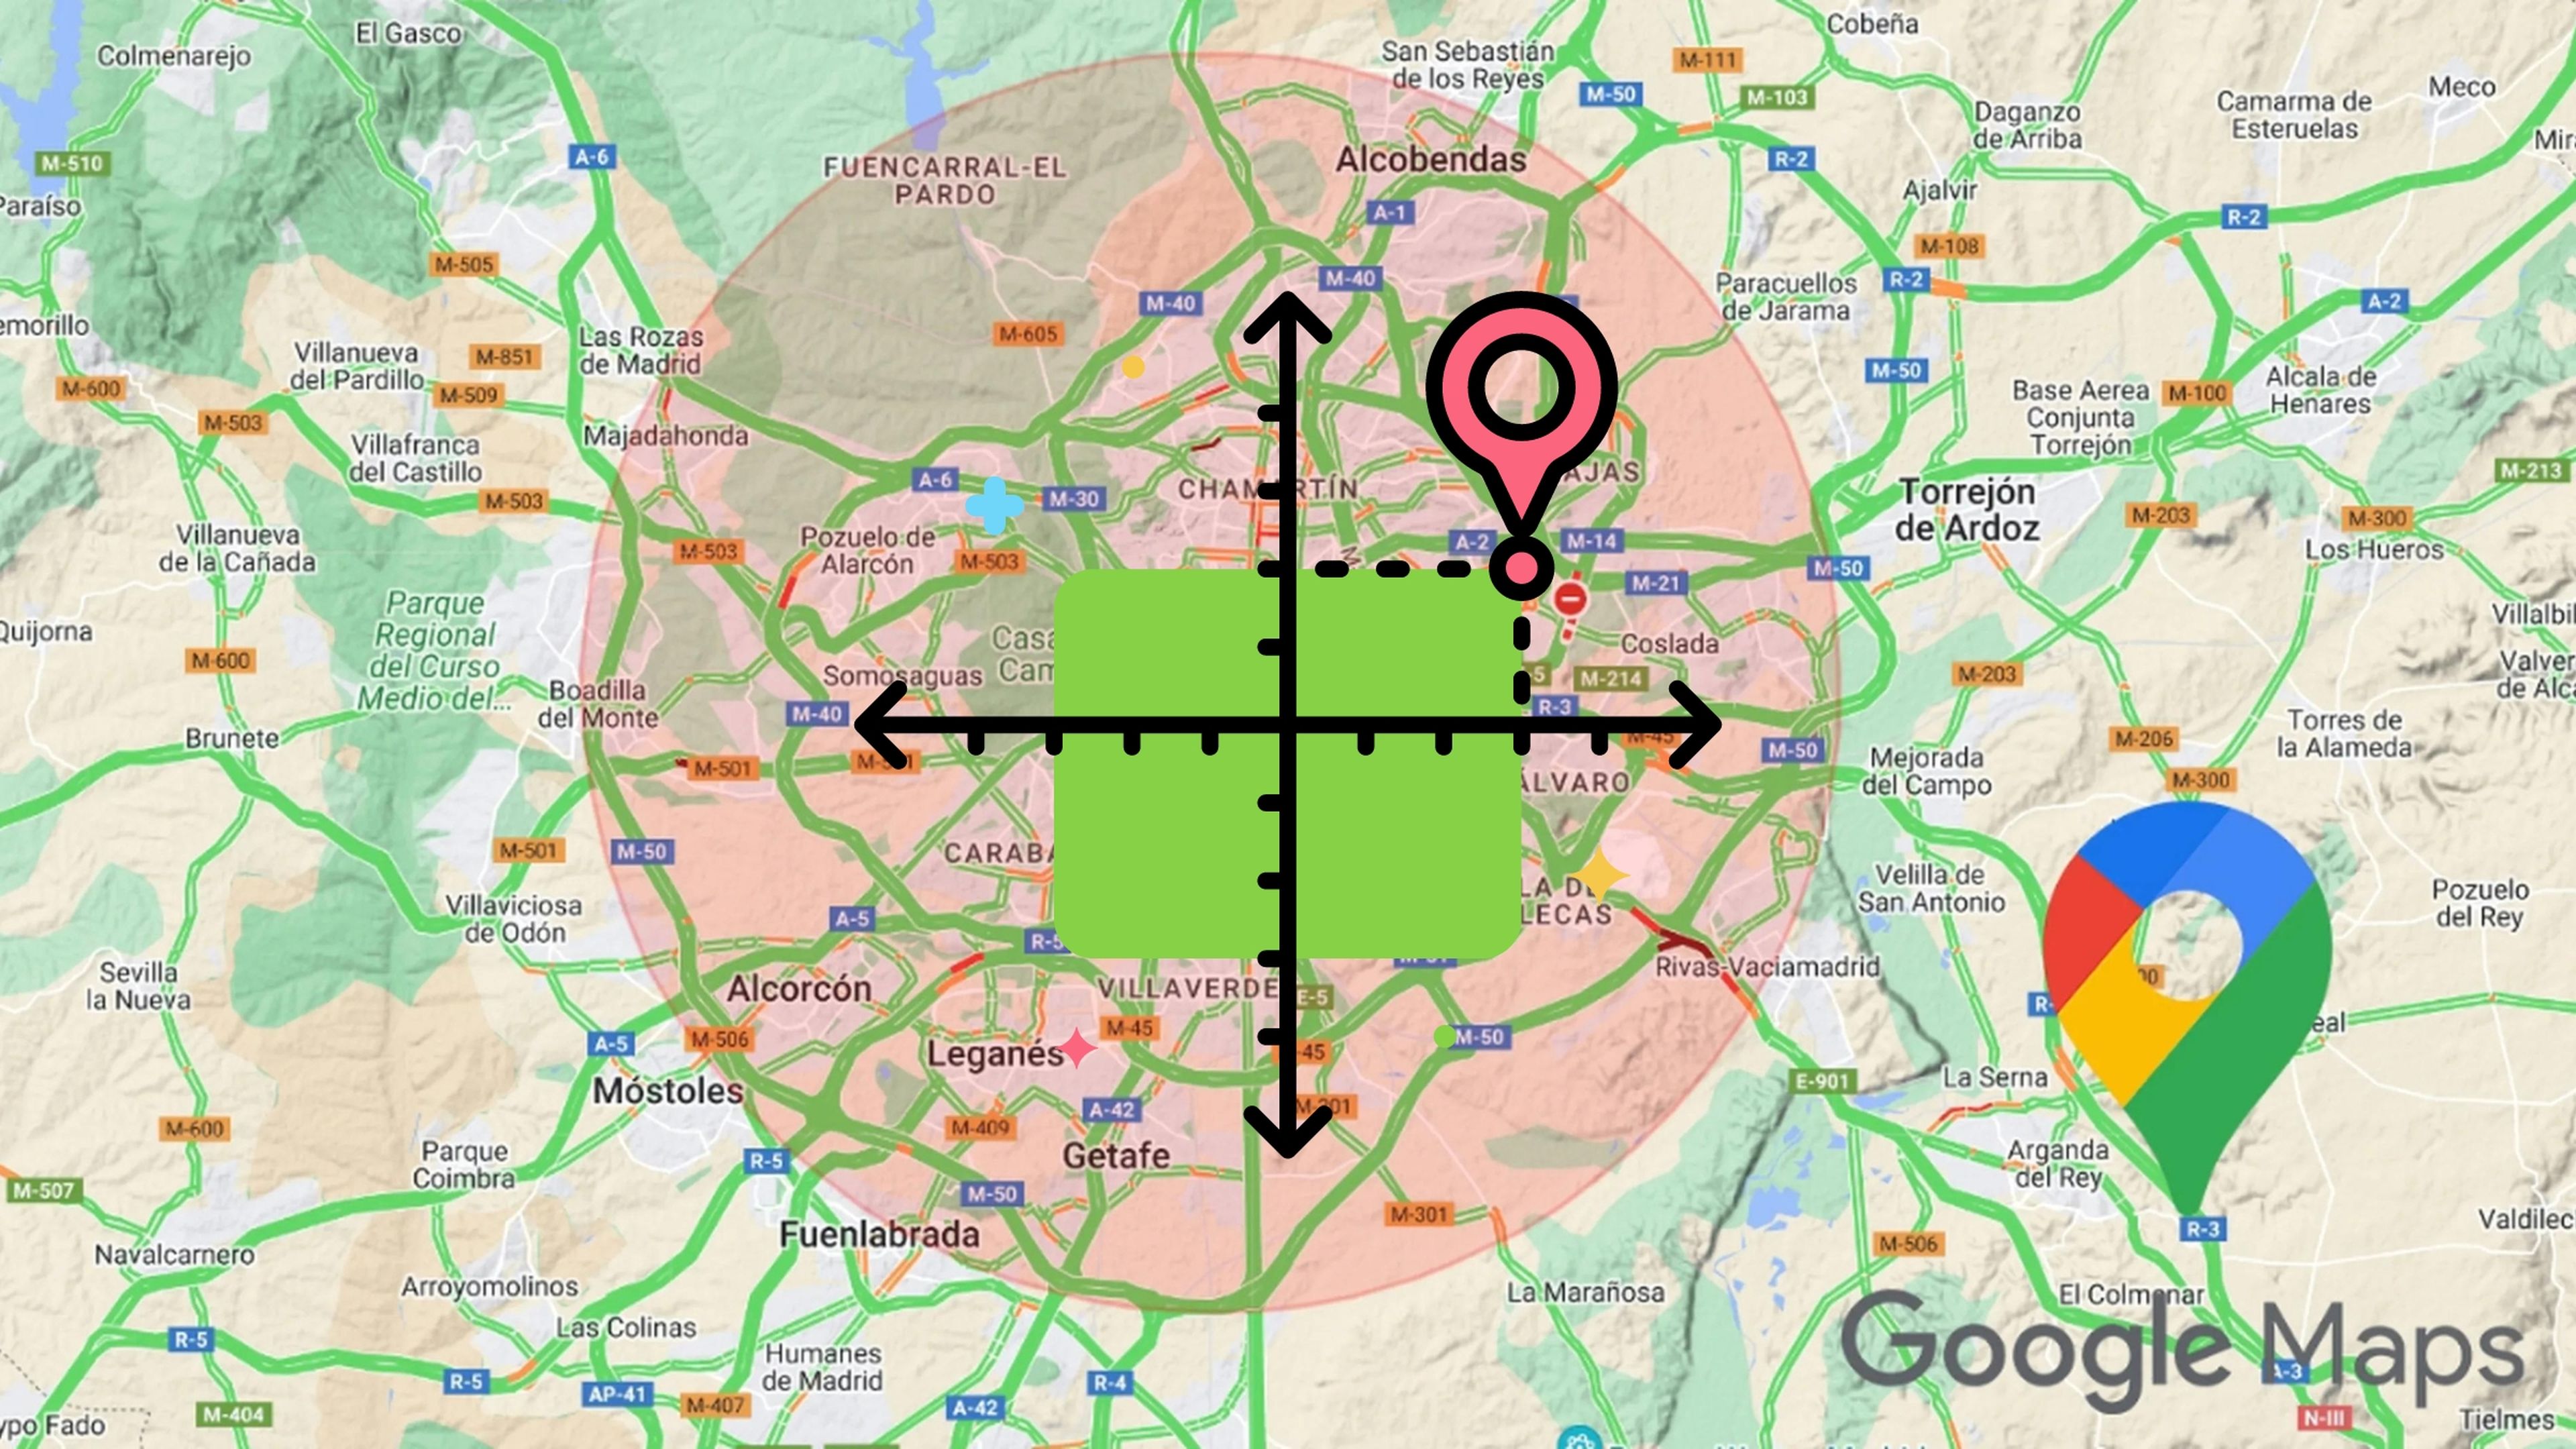 Cómo saber las coordenadas de cualquier lugar con Google Maps